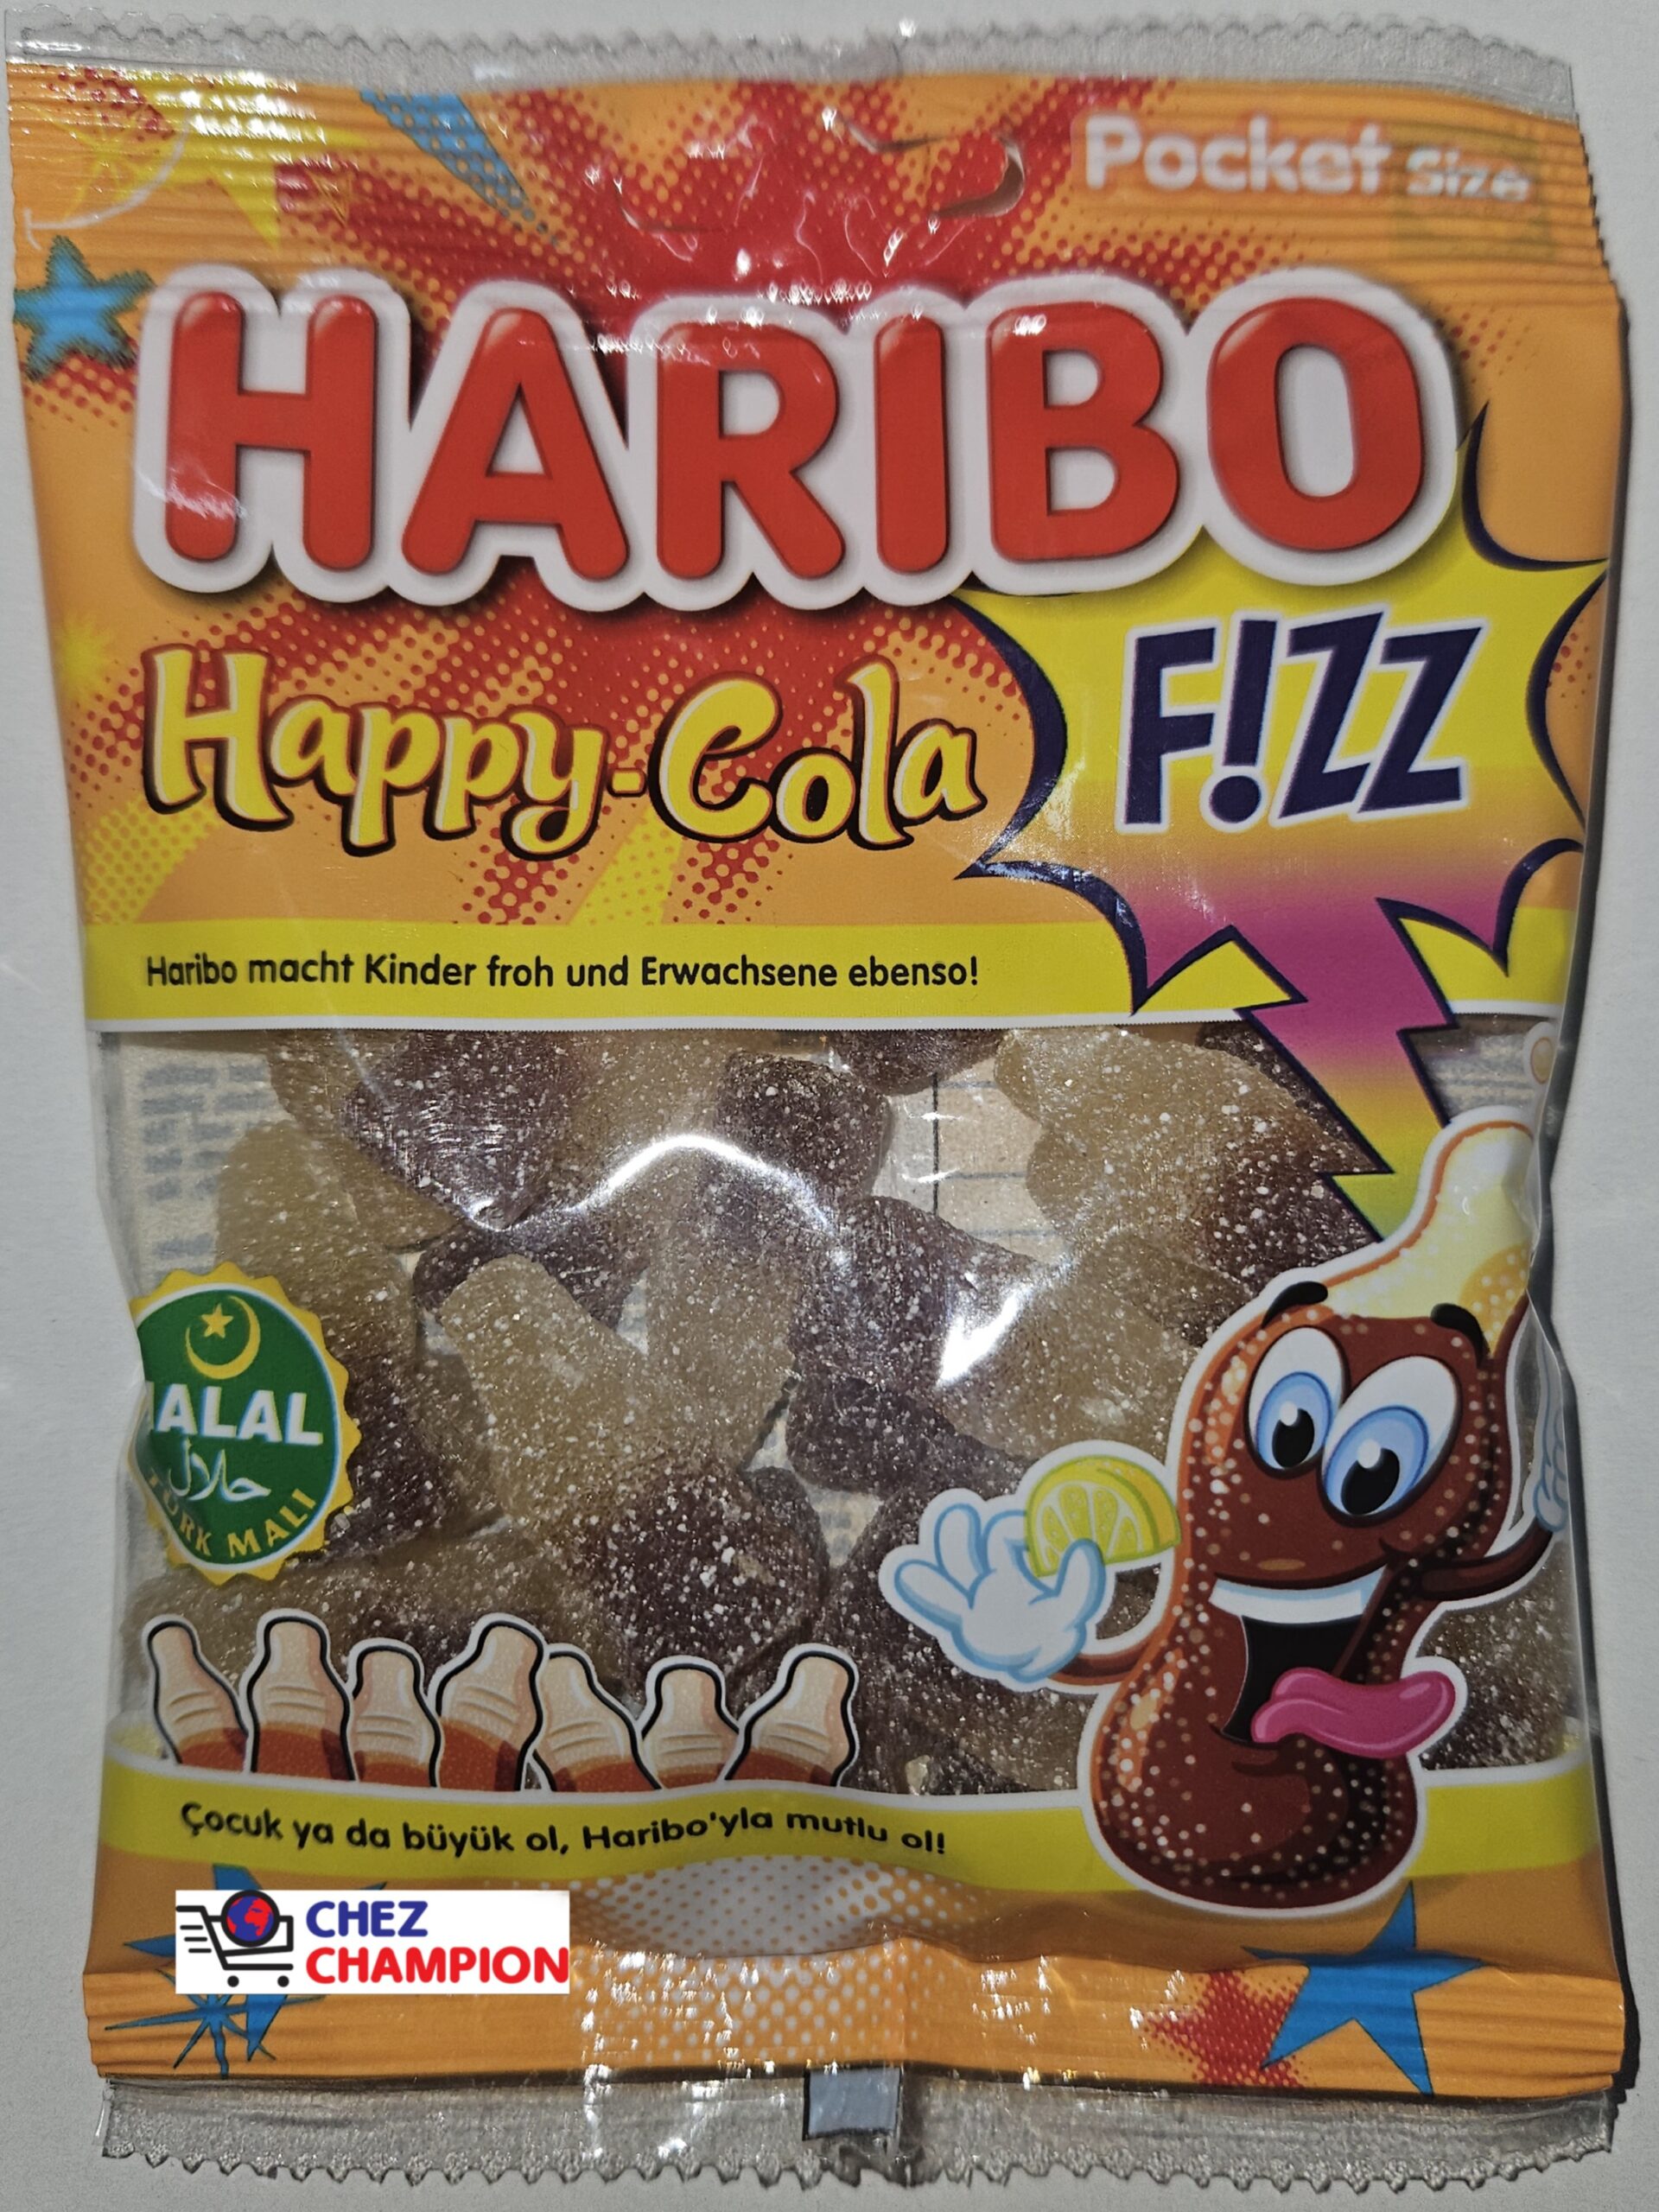 Haribo happy cola halal – bonbon goût coca cola acide – Fruchtgummi mit Cola-geschmack – 100g